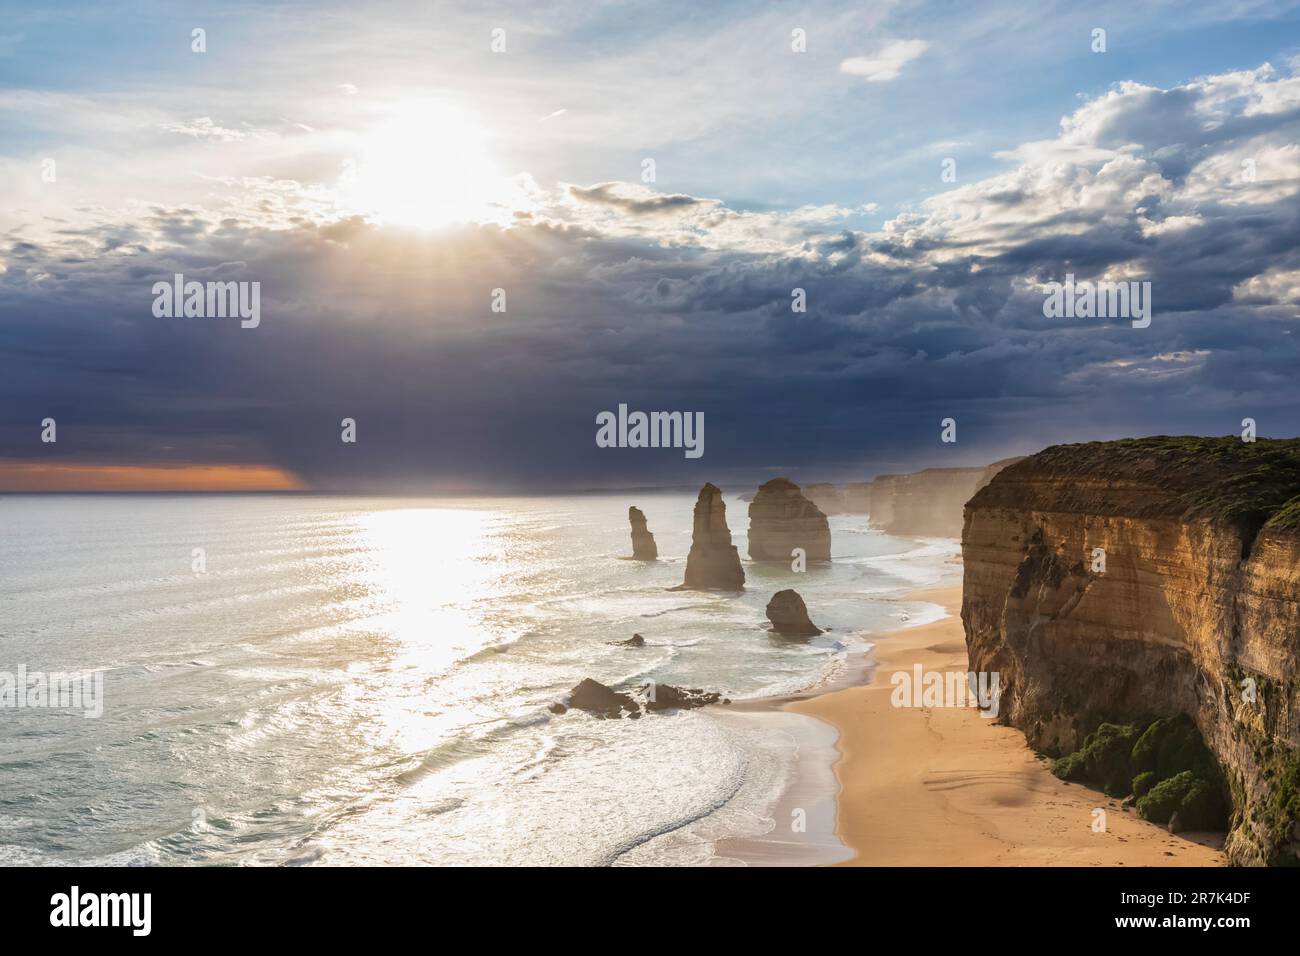 Australia, Victoria, Vista del sole che splende attraverso le nuvole di tempesta sulla spiaggia sabbiosa nel Parco Nazionale di Port Campbell con dodici Apostoli sullo sfondo Foto Stock